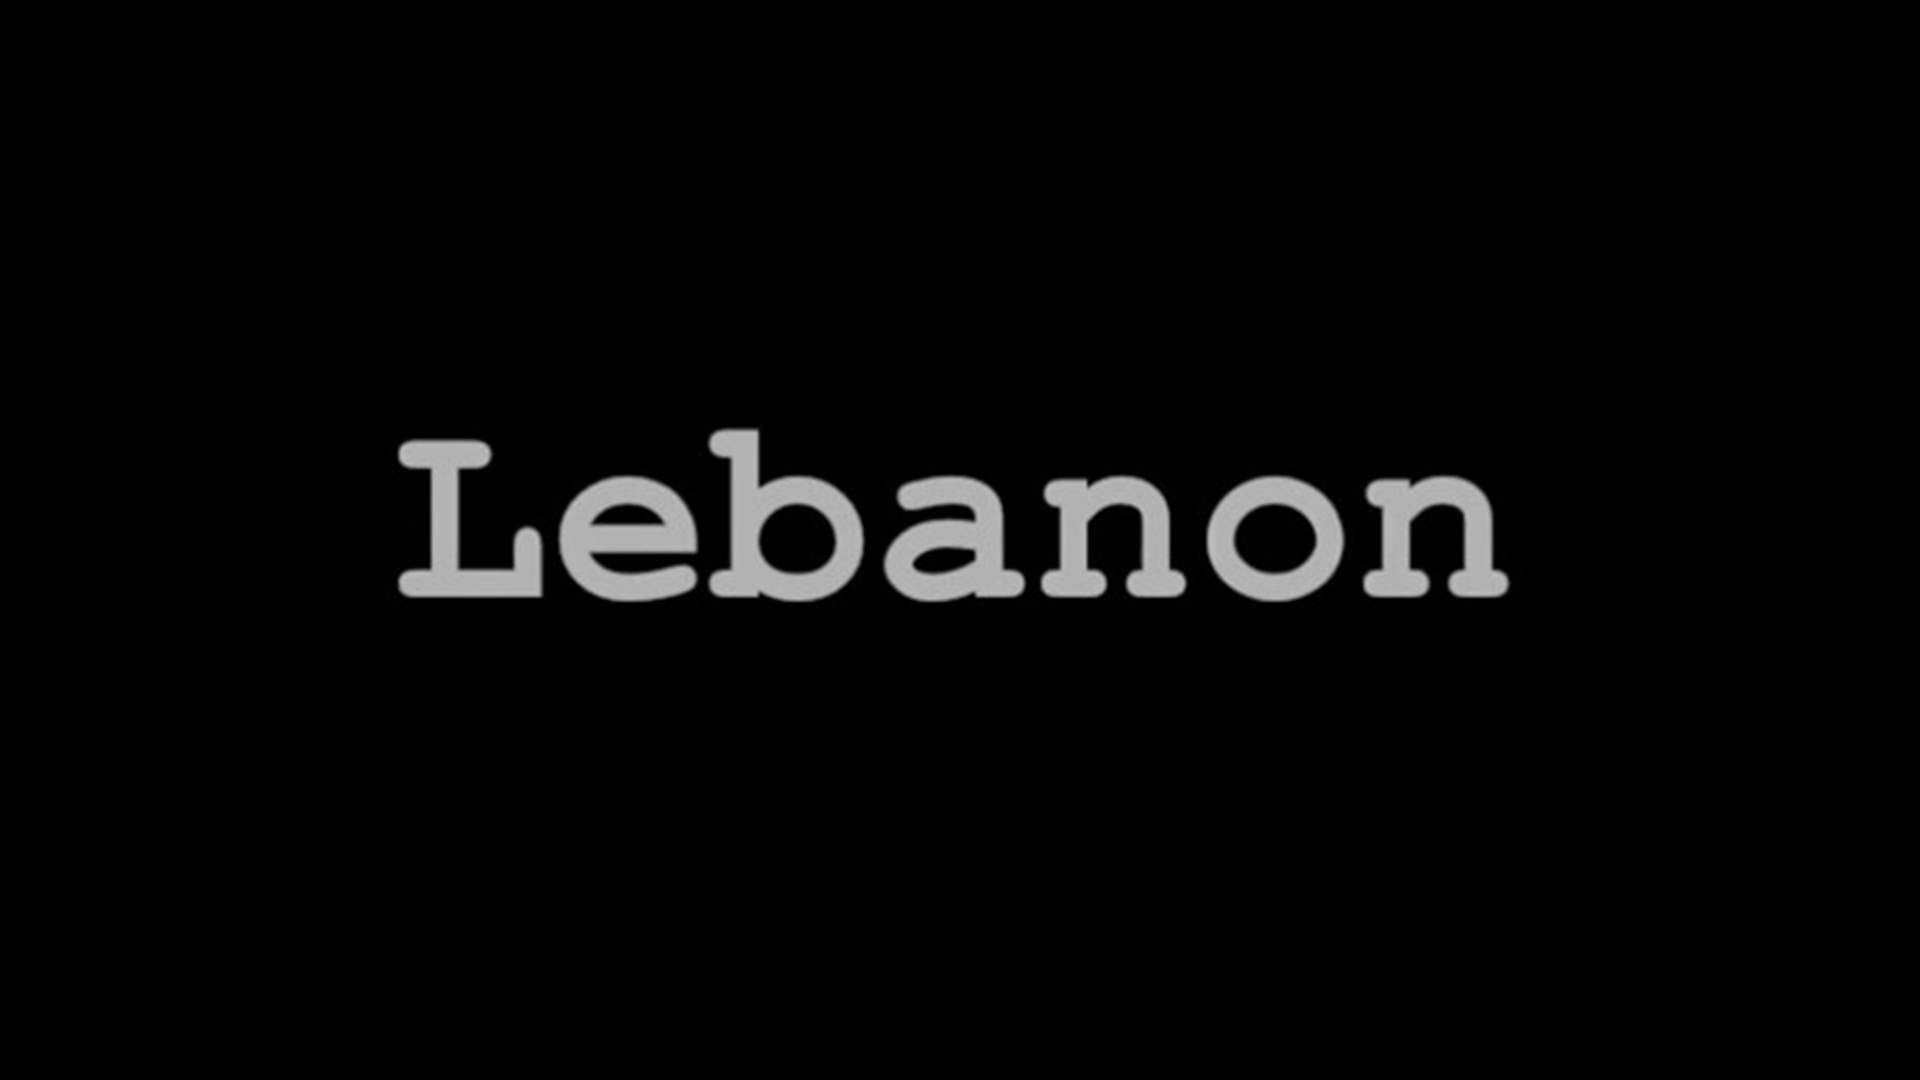 بالفيديو - العنصريّة في لبنان... إلى متى؟ 